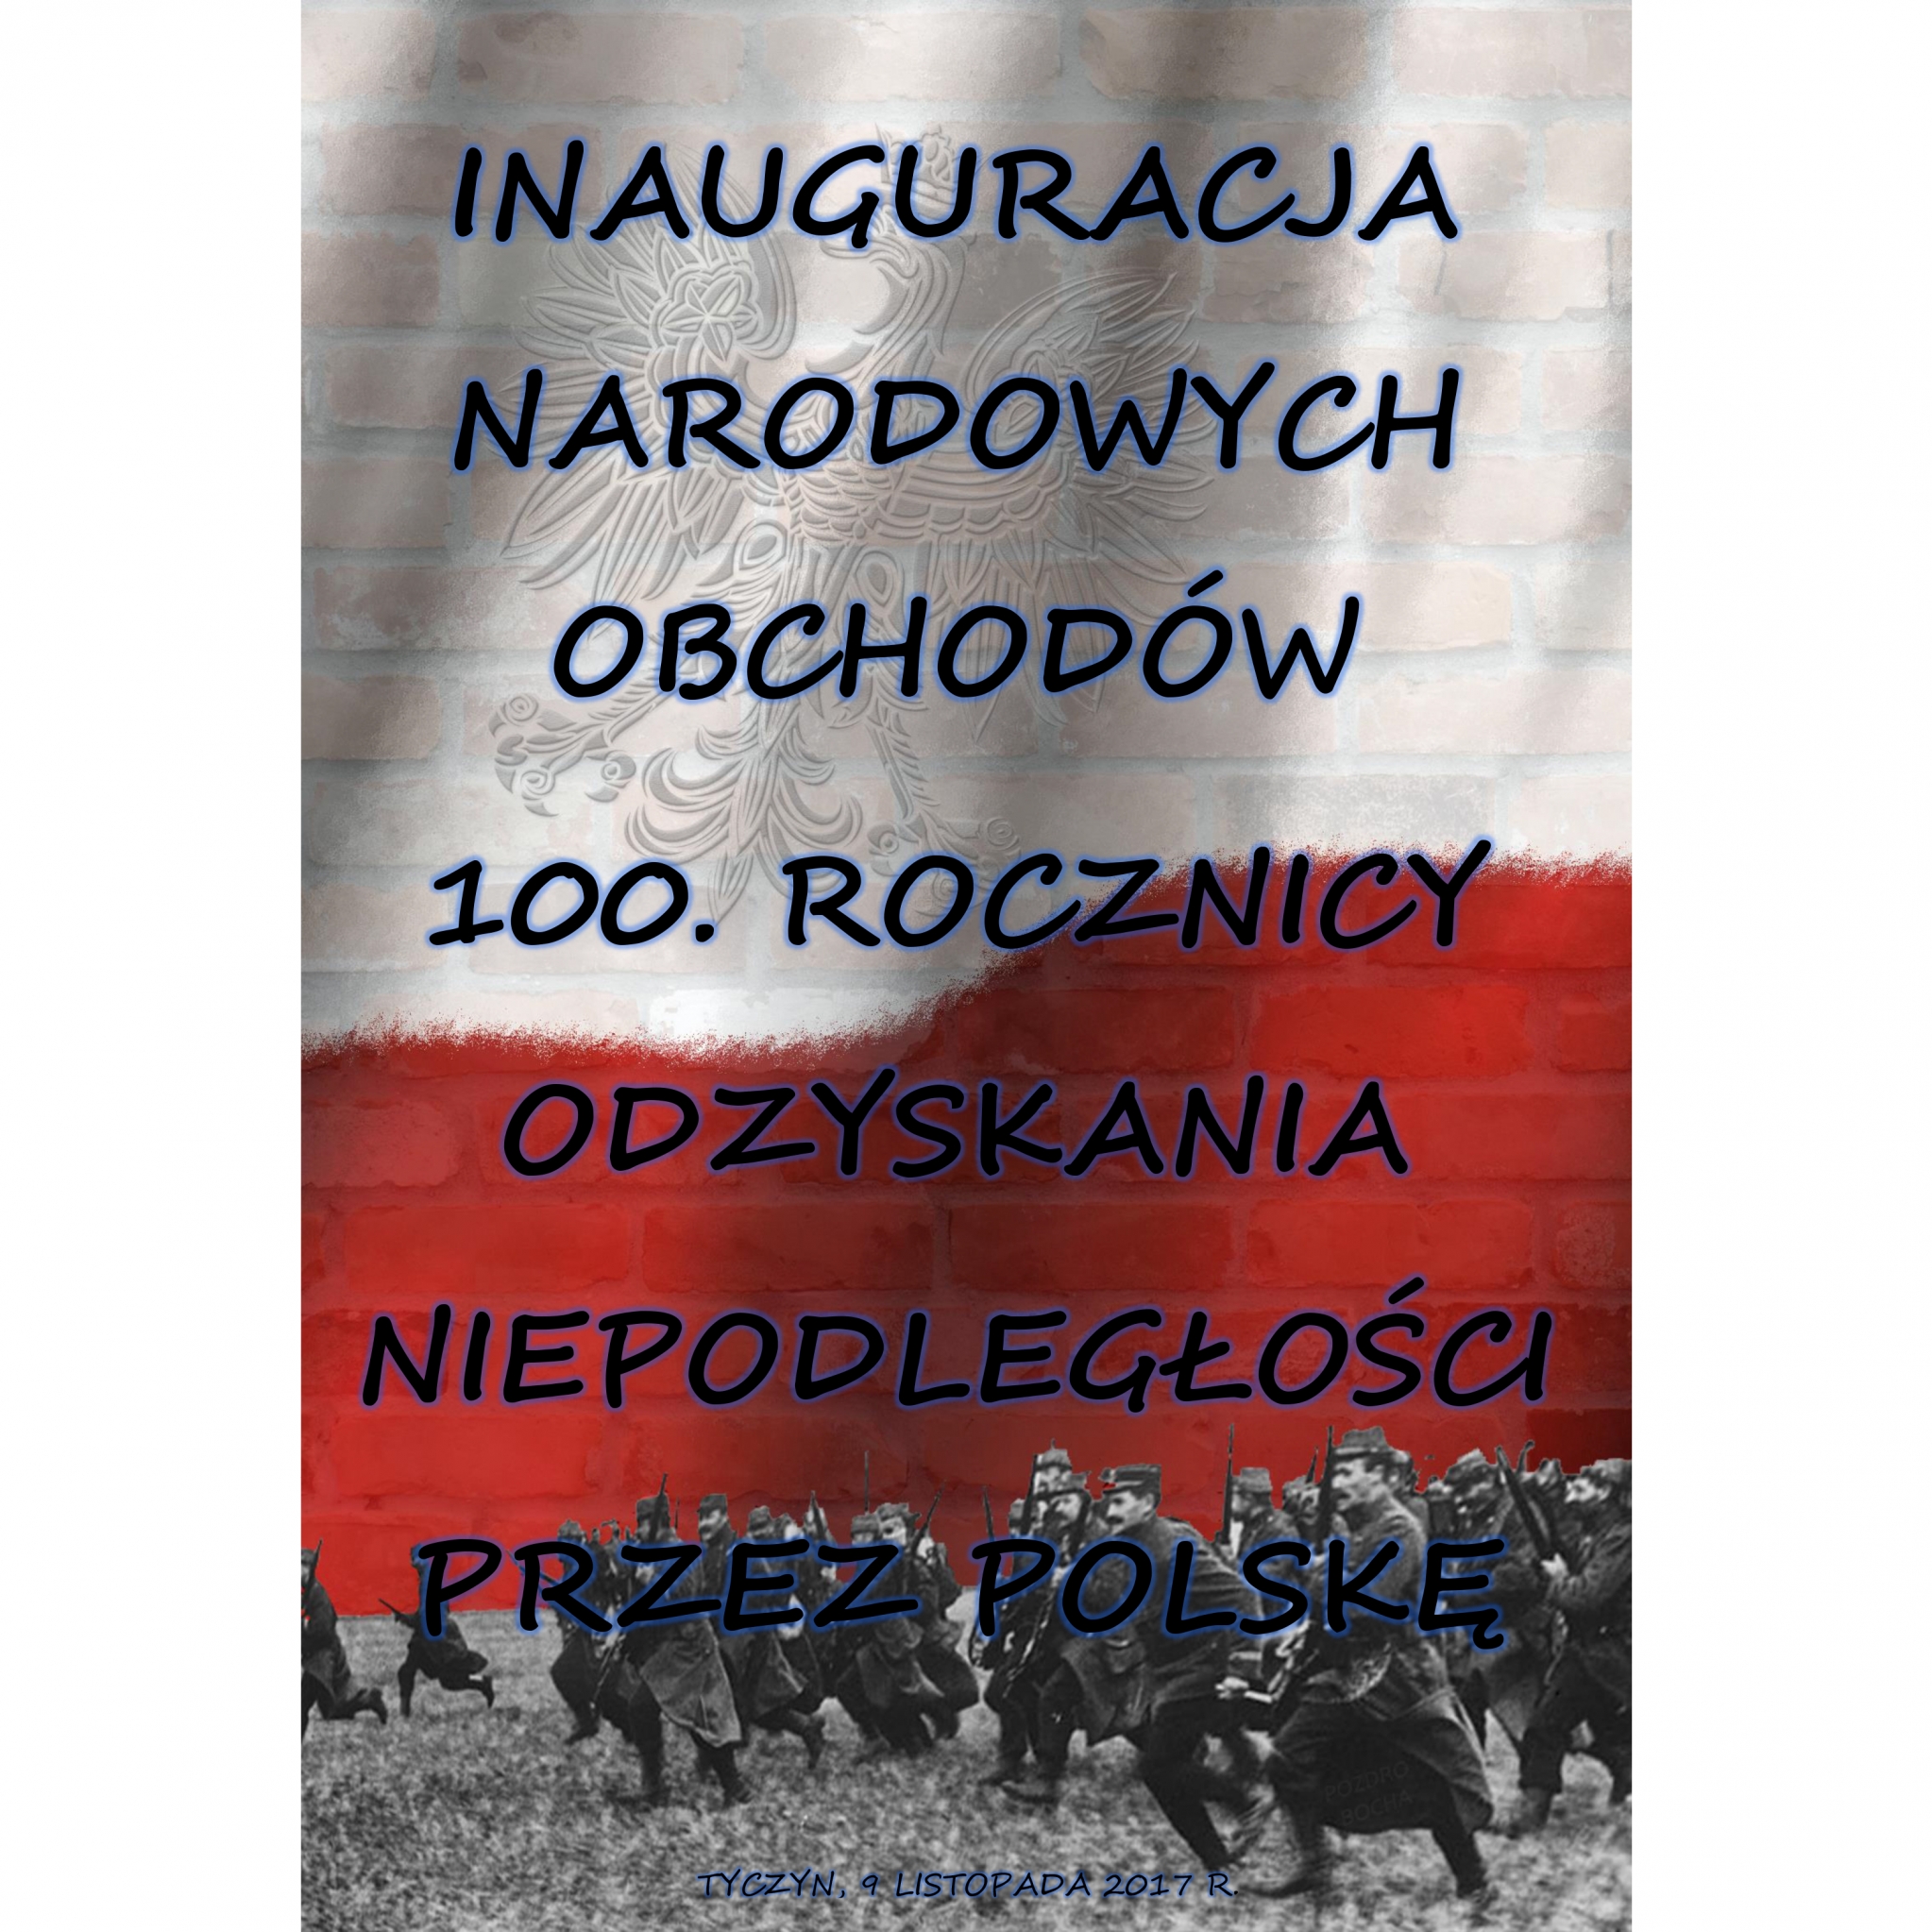 Inauguracja narodowych obchodów 100. rocznicy Odzyskania Niepodległości przez Polskę w Tyczynie.